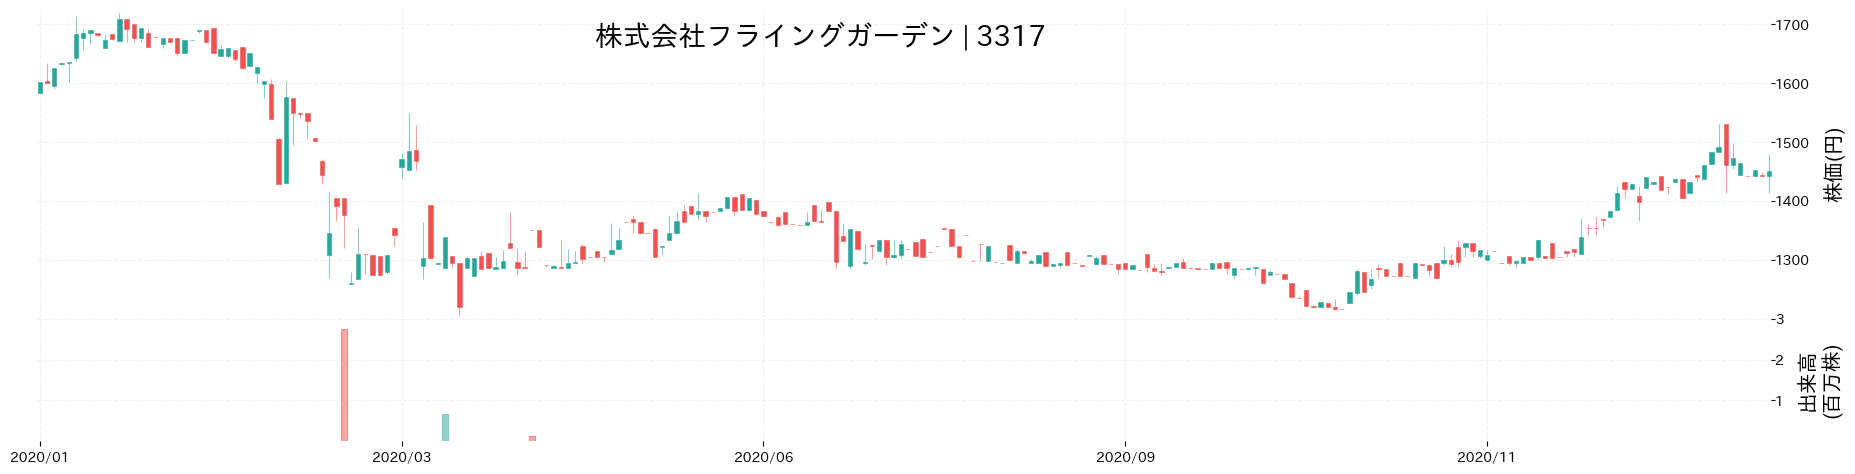 フライングガーデンの株価推移(2020)